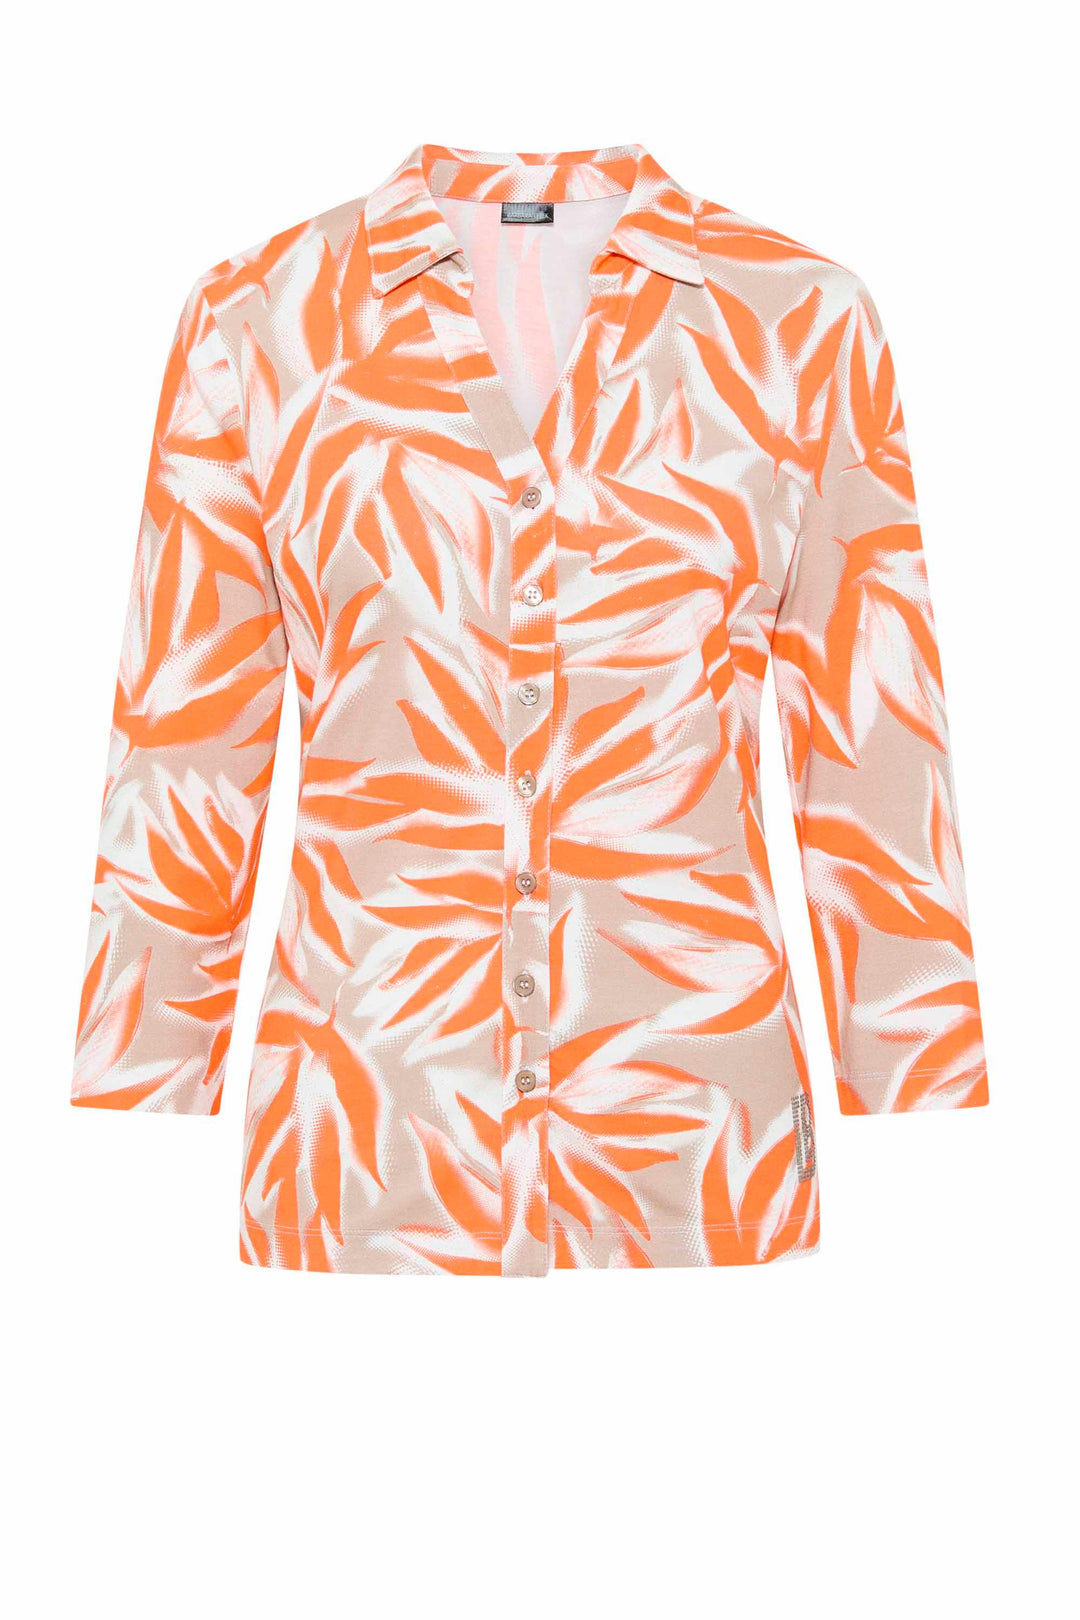 Barbara Lebek | Stylish & Jackets – - Coats, Tagged Affordable Fashion ginasmartboutique \